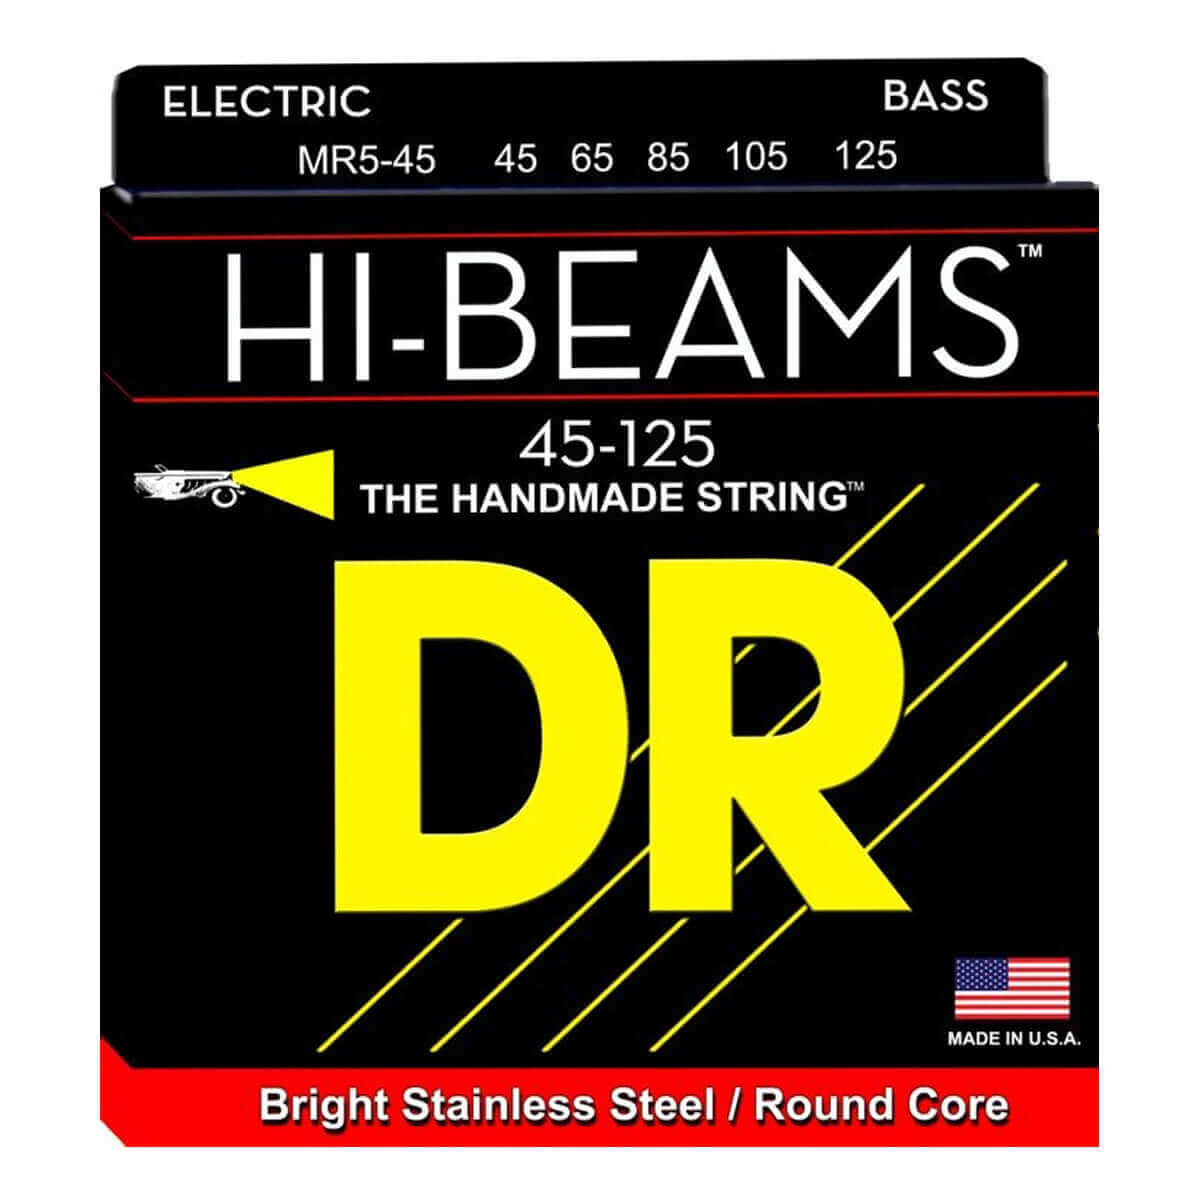 DR Hi-Beam 5 (45-125) Cuerdas de Bajo Eléctrico - Descripción Las cuerdas para bajos de acero inoxidable Hi-Beams™ son enrolladas y construidas sobre un núcleo redondo que es único en la industria. Para fabricar la cuerdas Hi-Beams™ se requiere mucho más